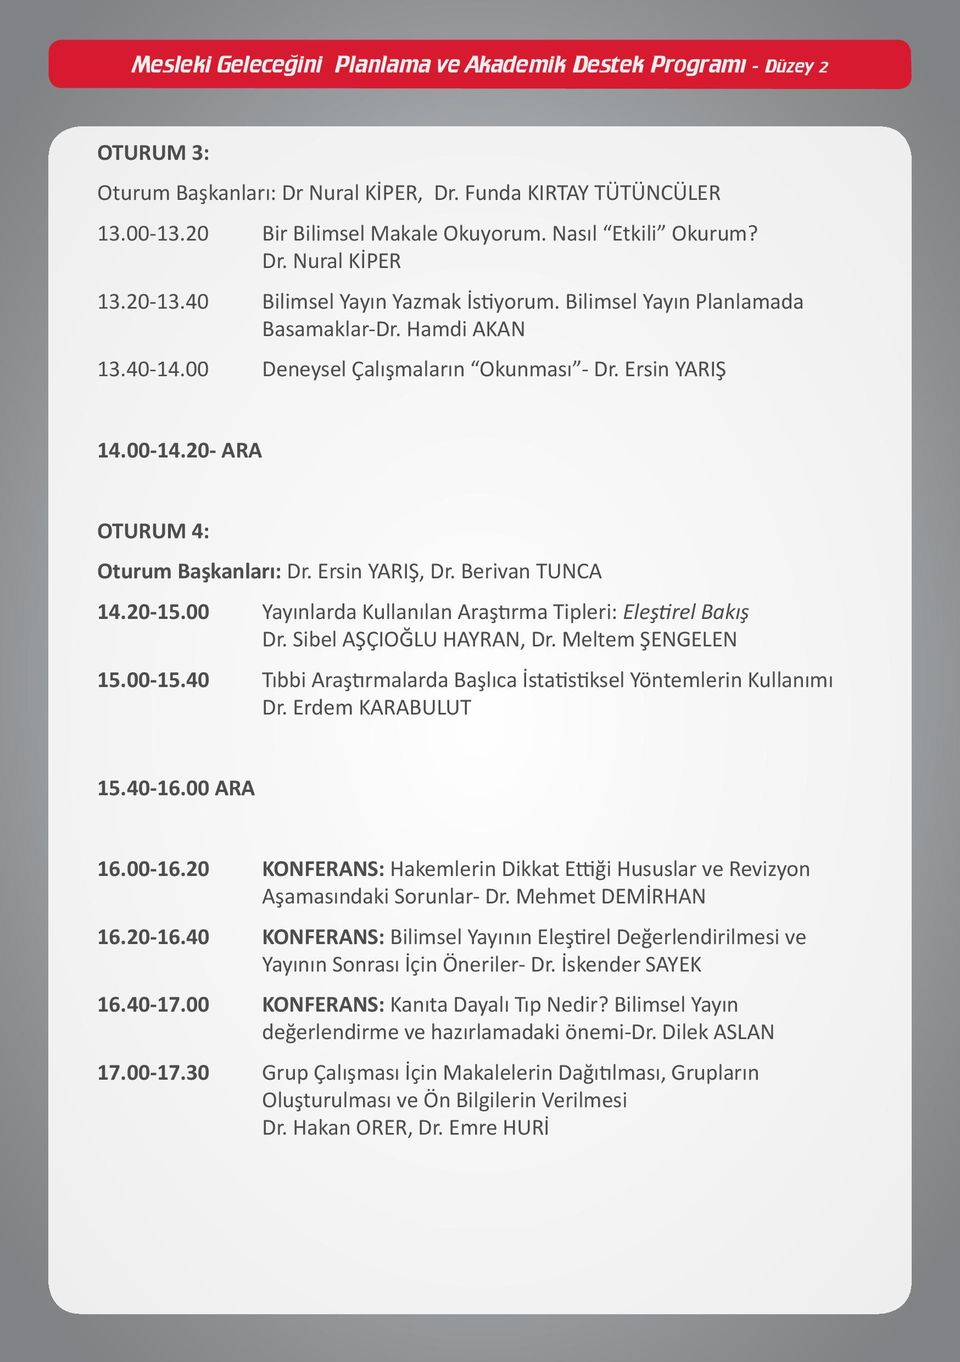 20-15.00 Yayınlarda Kullanılan Araştırma Tipleri: Eleştirel Bakış Dr. Sibel AŞÇIOĞLU HAYRAN, Dr. Meltem ŞENGELEN 15.00-15.40 Tıbbi Araştırmalarda Başlıca İstatistiksel Yöntemlerin Kullanımı Dr.